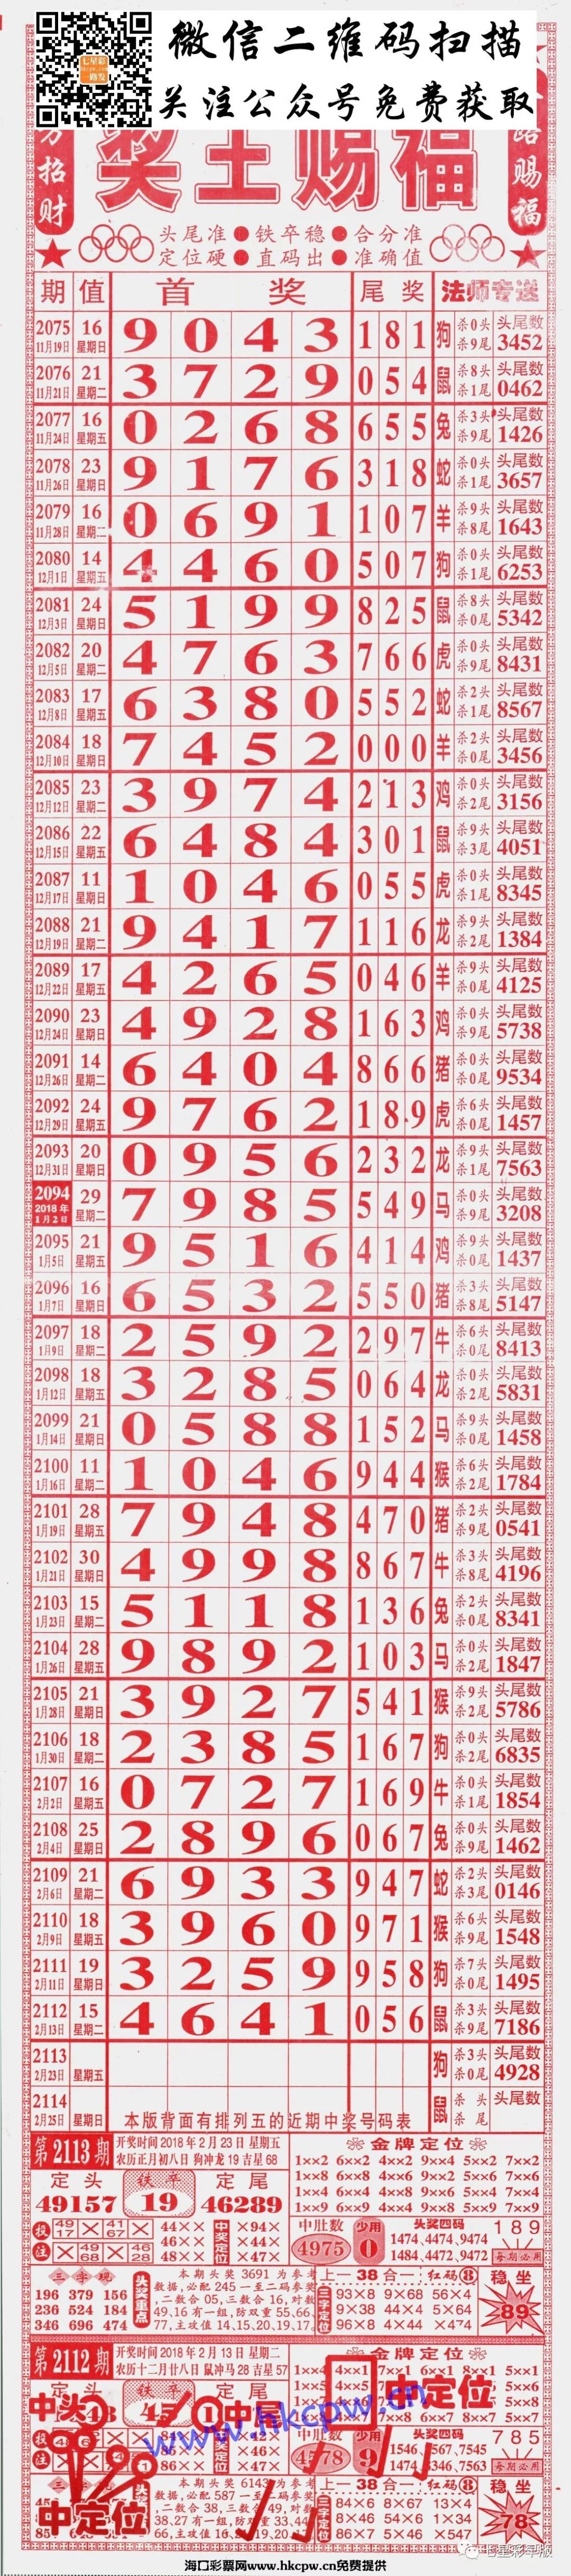 2113期七星彩长条:808,粤海局王,至尊,三点红,利民总版,新加坡对手等